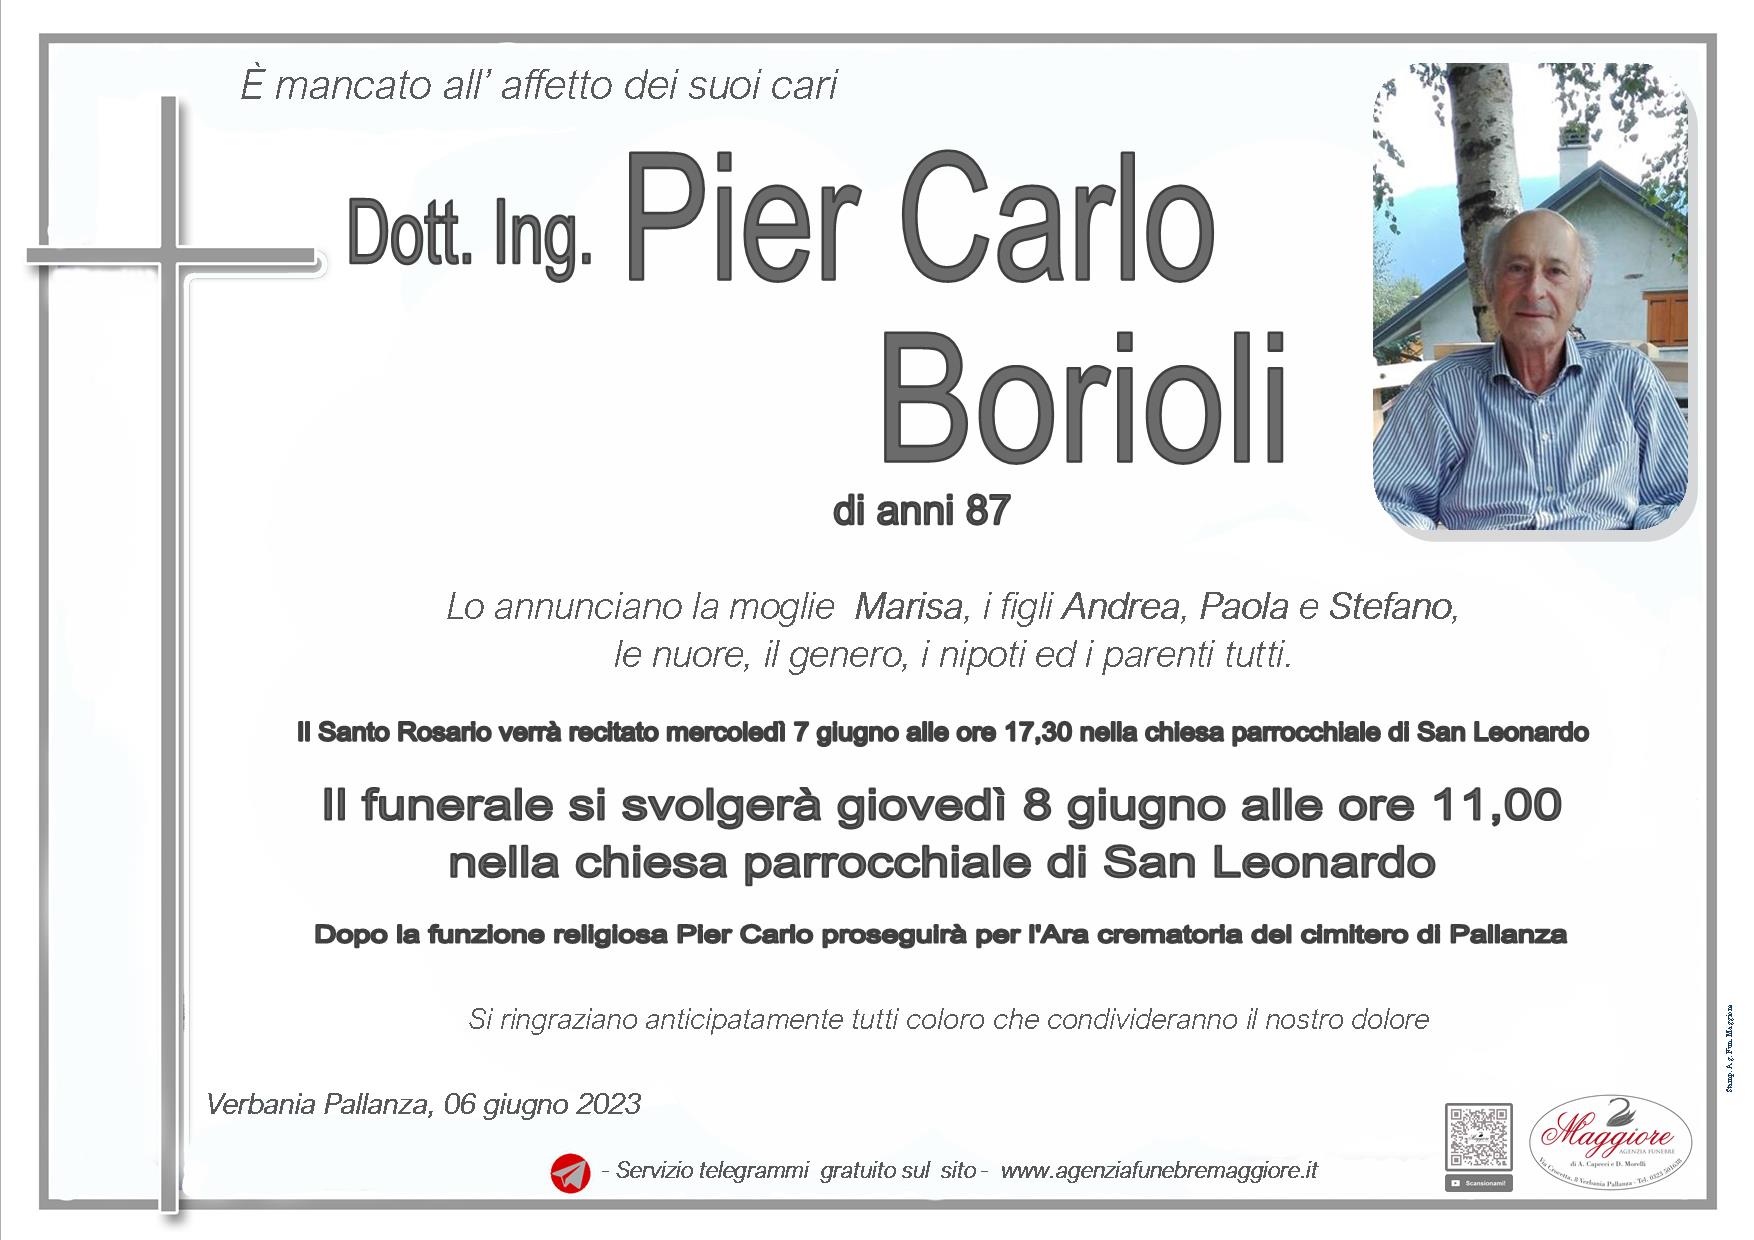 Pier Carlo Borioli